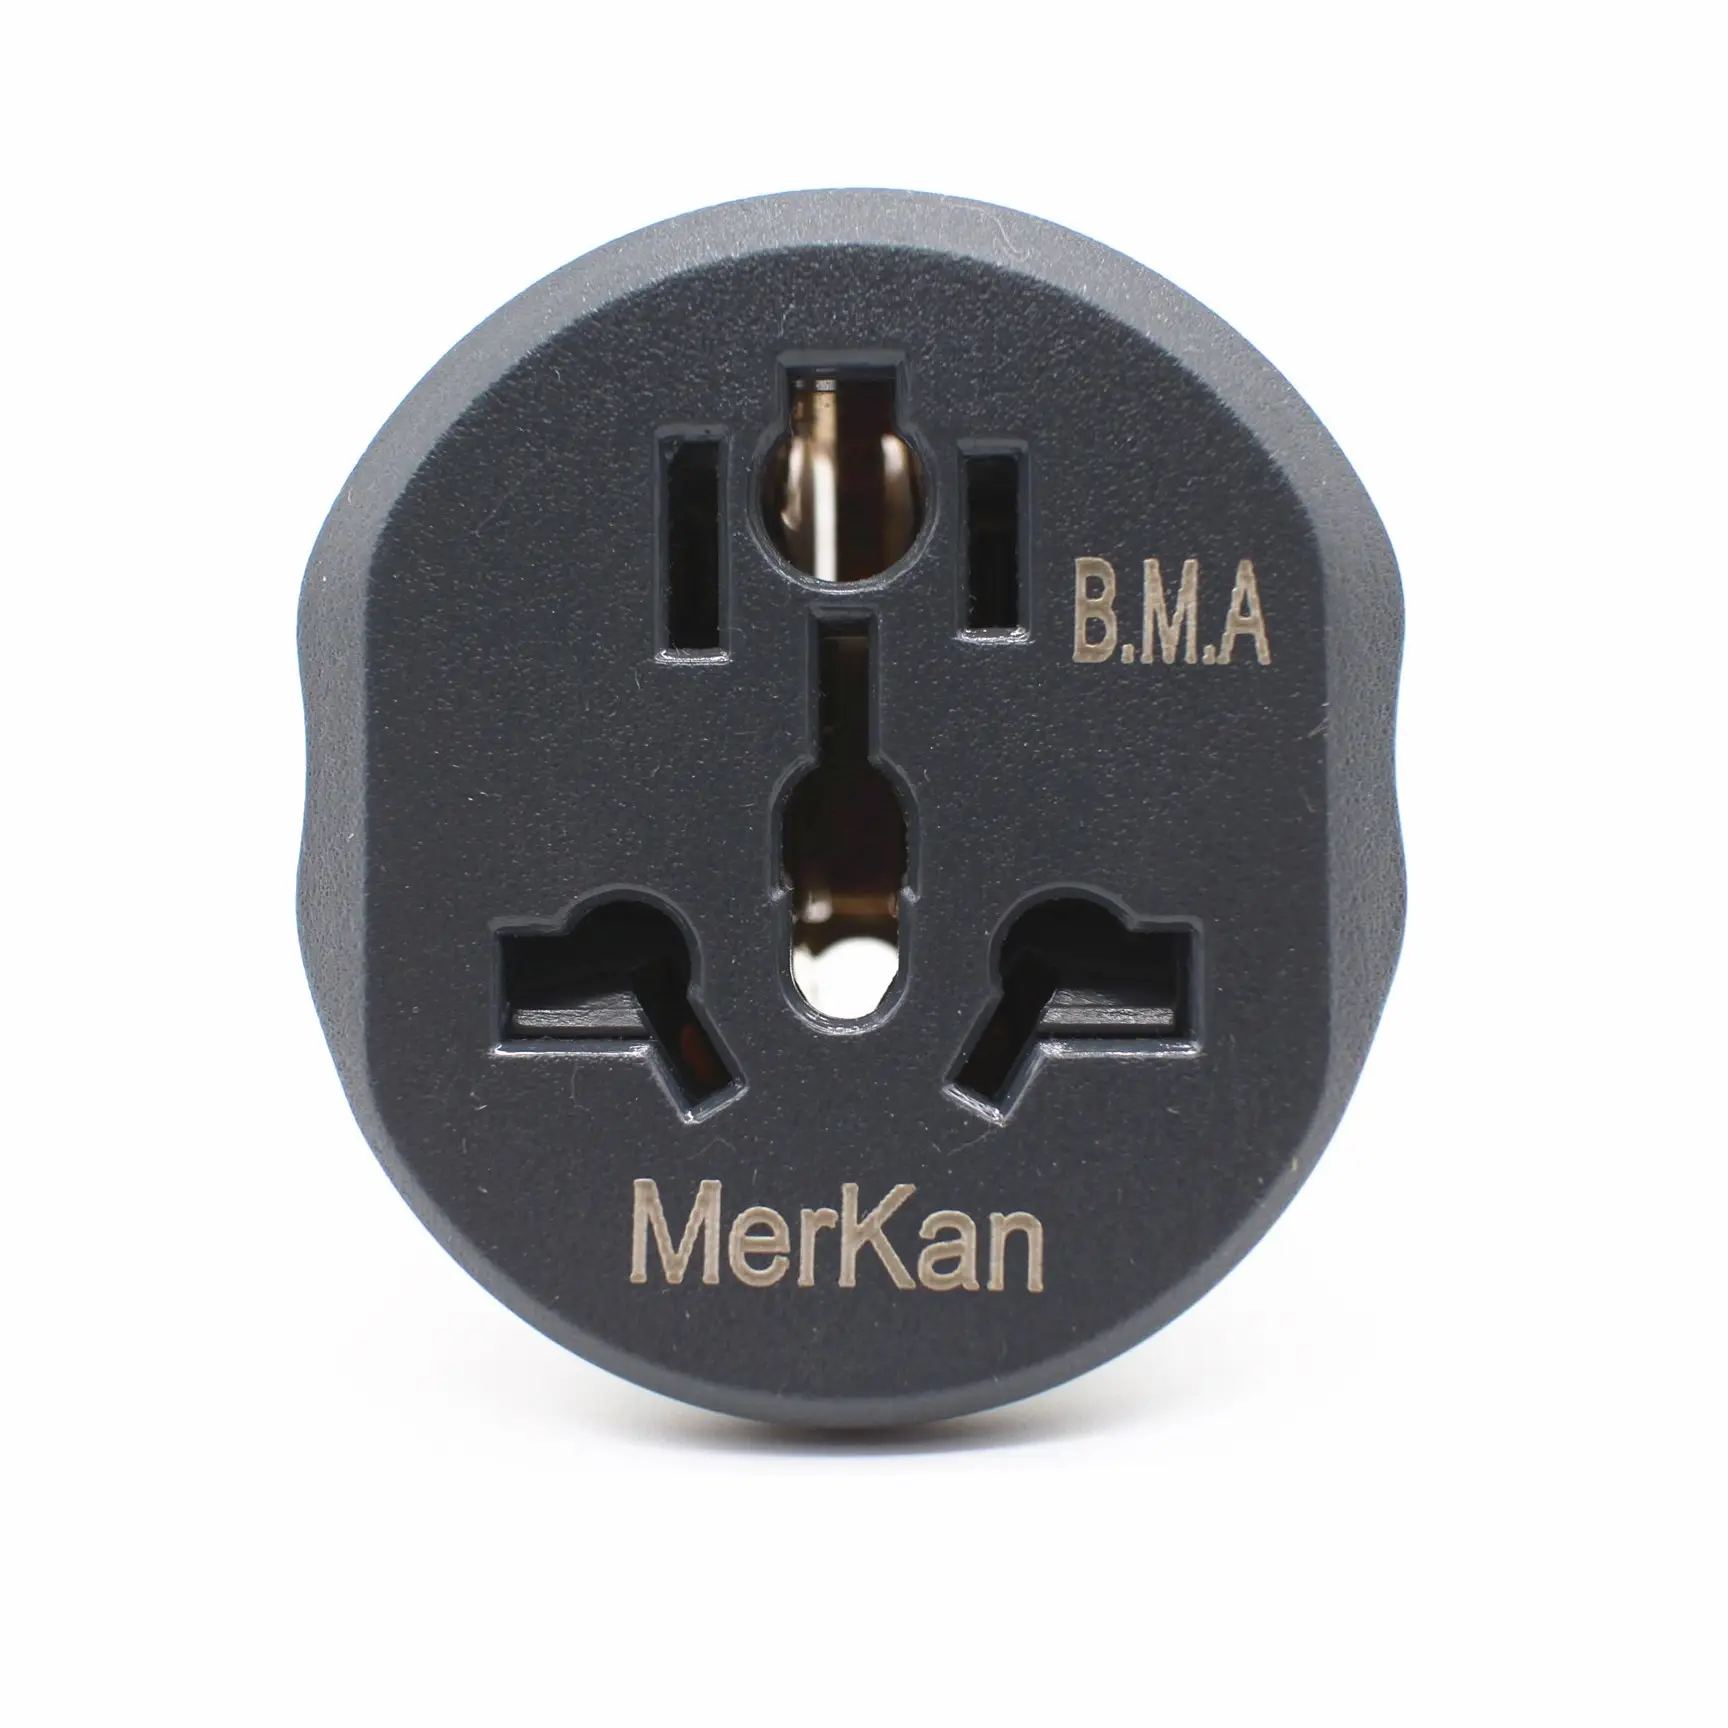 3 Pin Uk Mains Top Plug 13A 13 Amp Apparaat Stopcontact Elektrische Huishoudelijke Artikelen